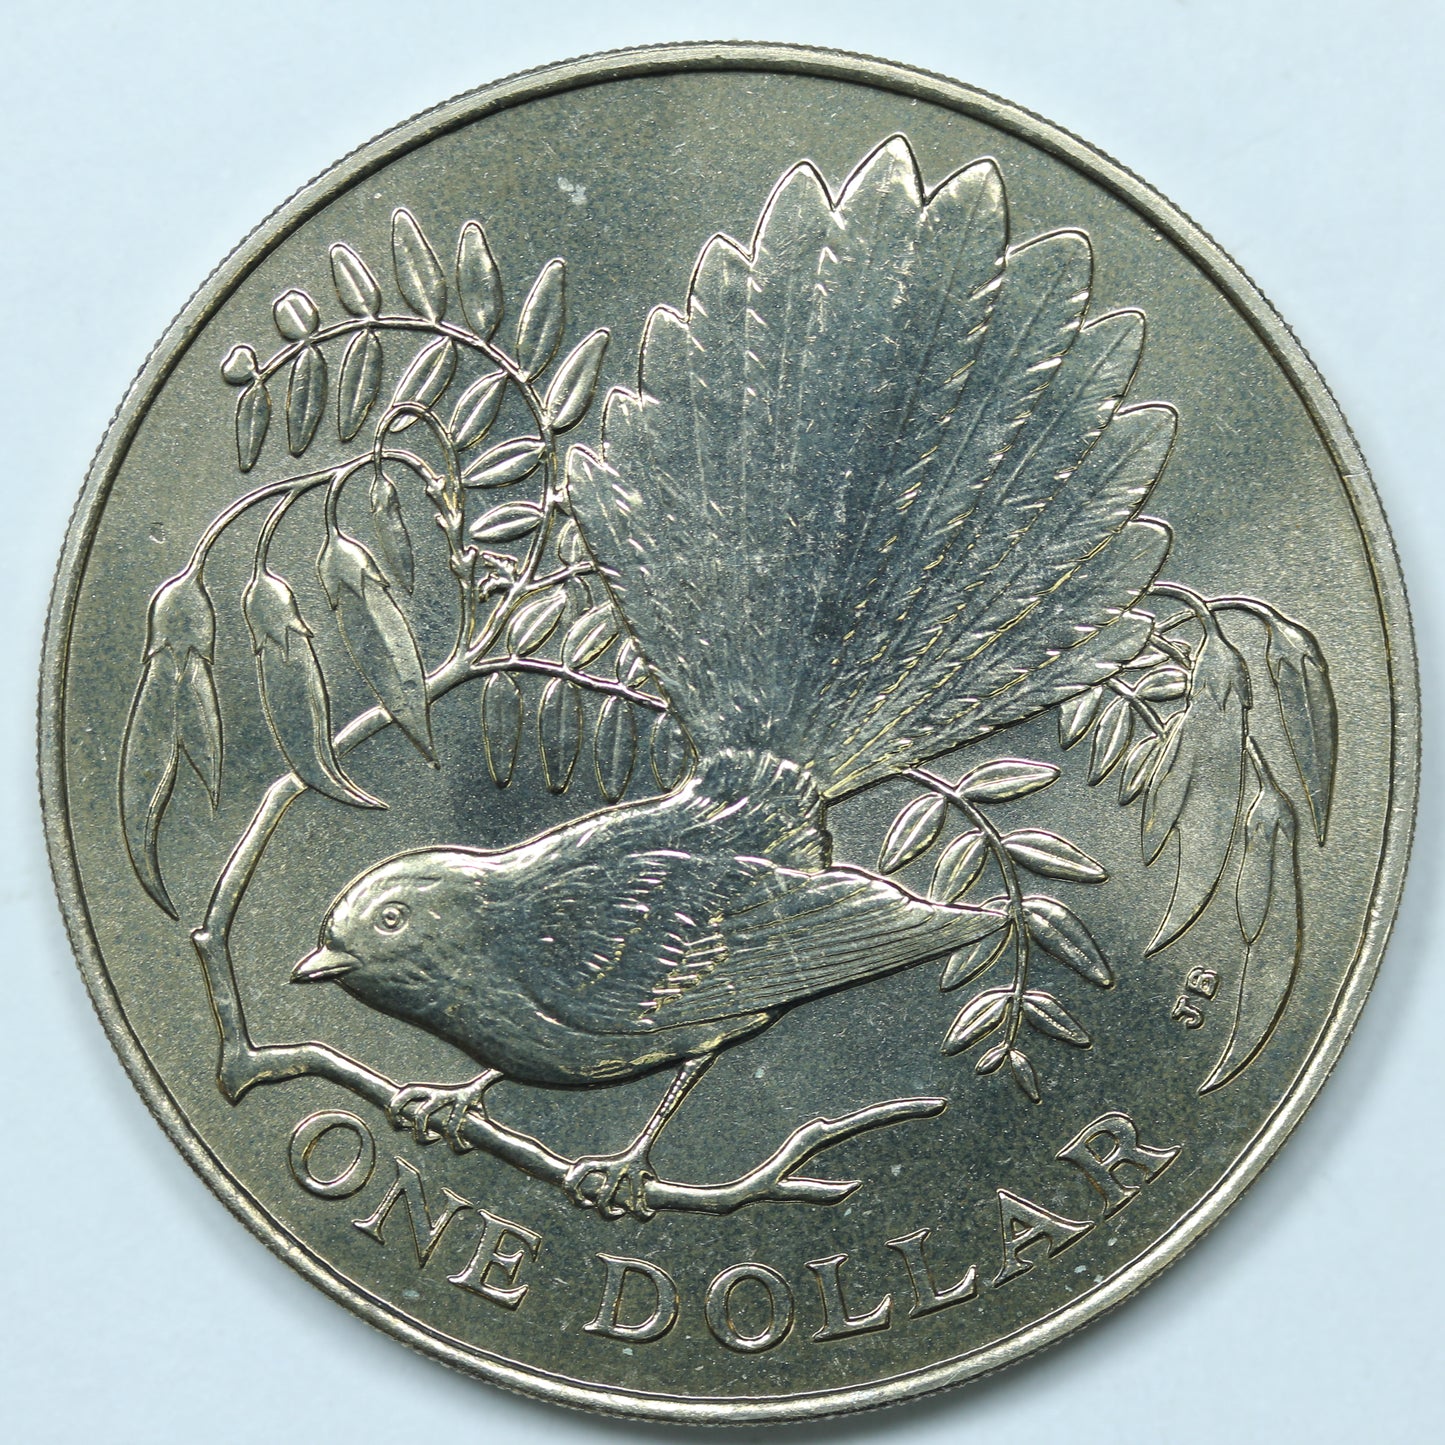 1980 New Zealand NZ $1 Coin Fantail Bird BU